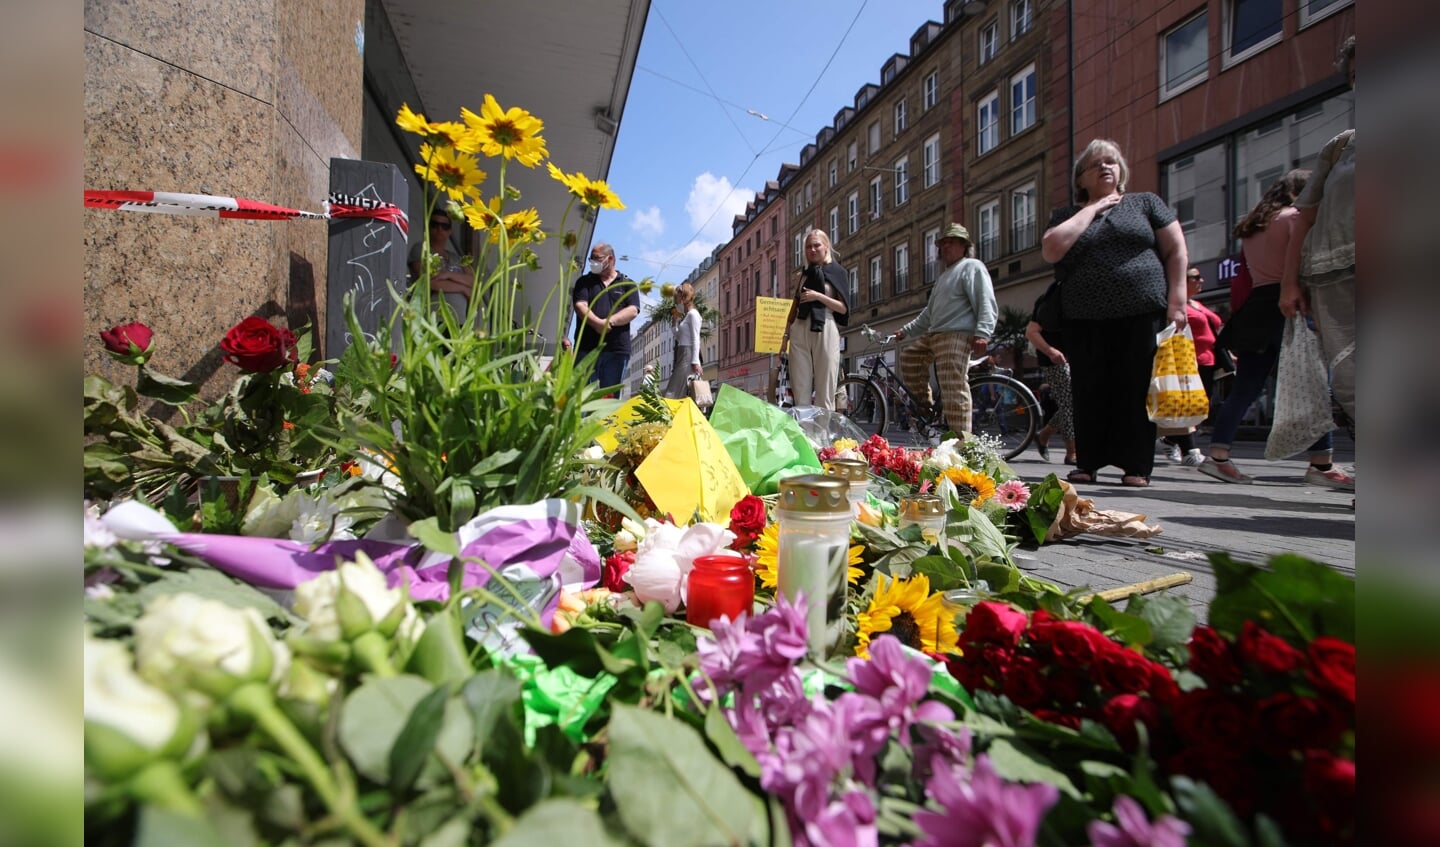 Indbyggere i Würzburg har lagt blomster og lys i det område, hvor en 24-årig somalisk mand fredag eftermiddag gik til angreb på folk i et varehus, i en bank og på gaden.